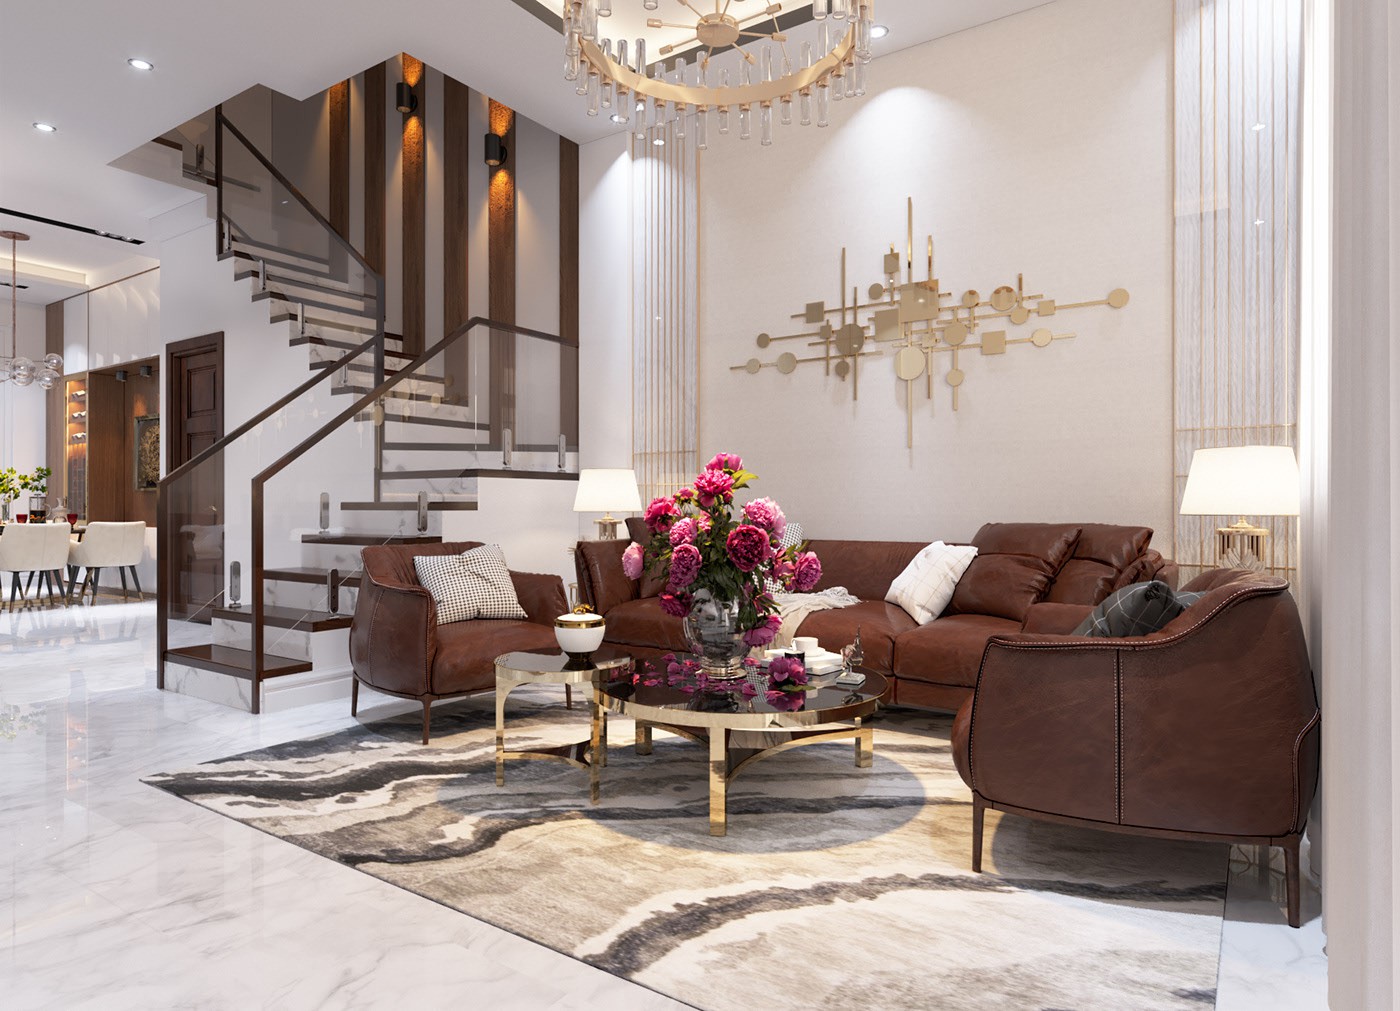 Phòng khách nhà phố hiện đại nổi bật với bộ ghế sofa màu nâu, bàn trà tròn mạ vàng sáng bóng, tranh treo tường và đèn chùm cùng tông.